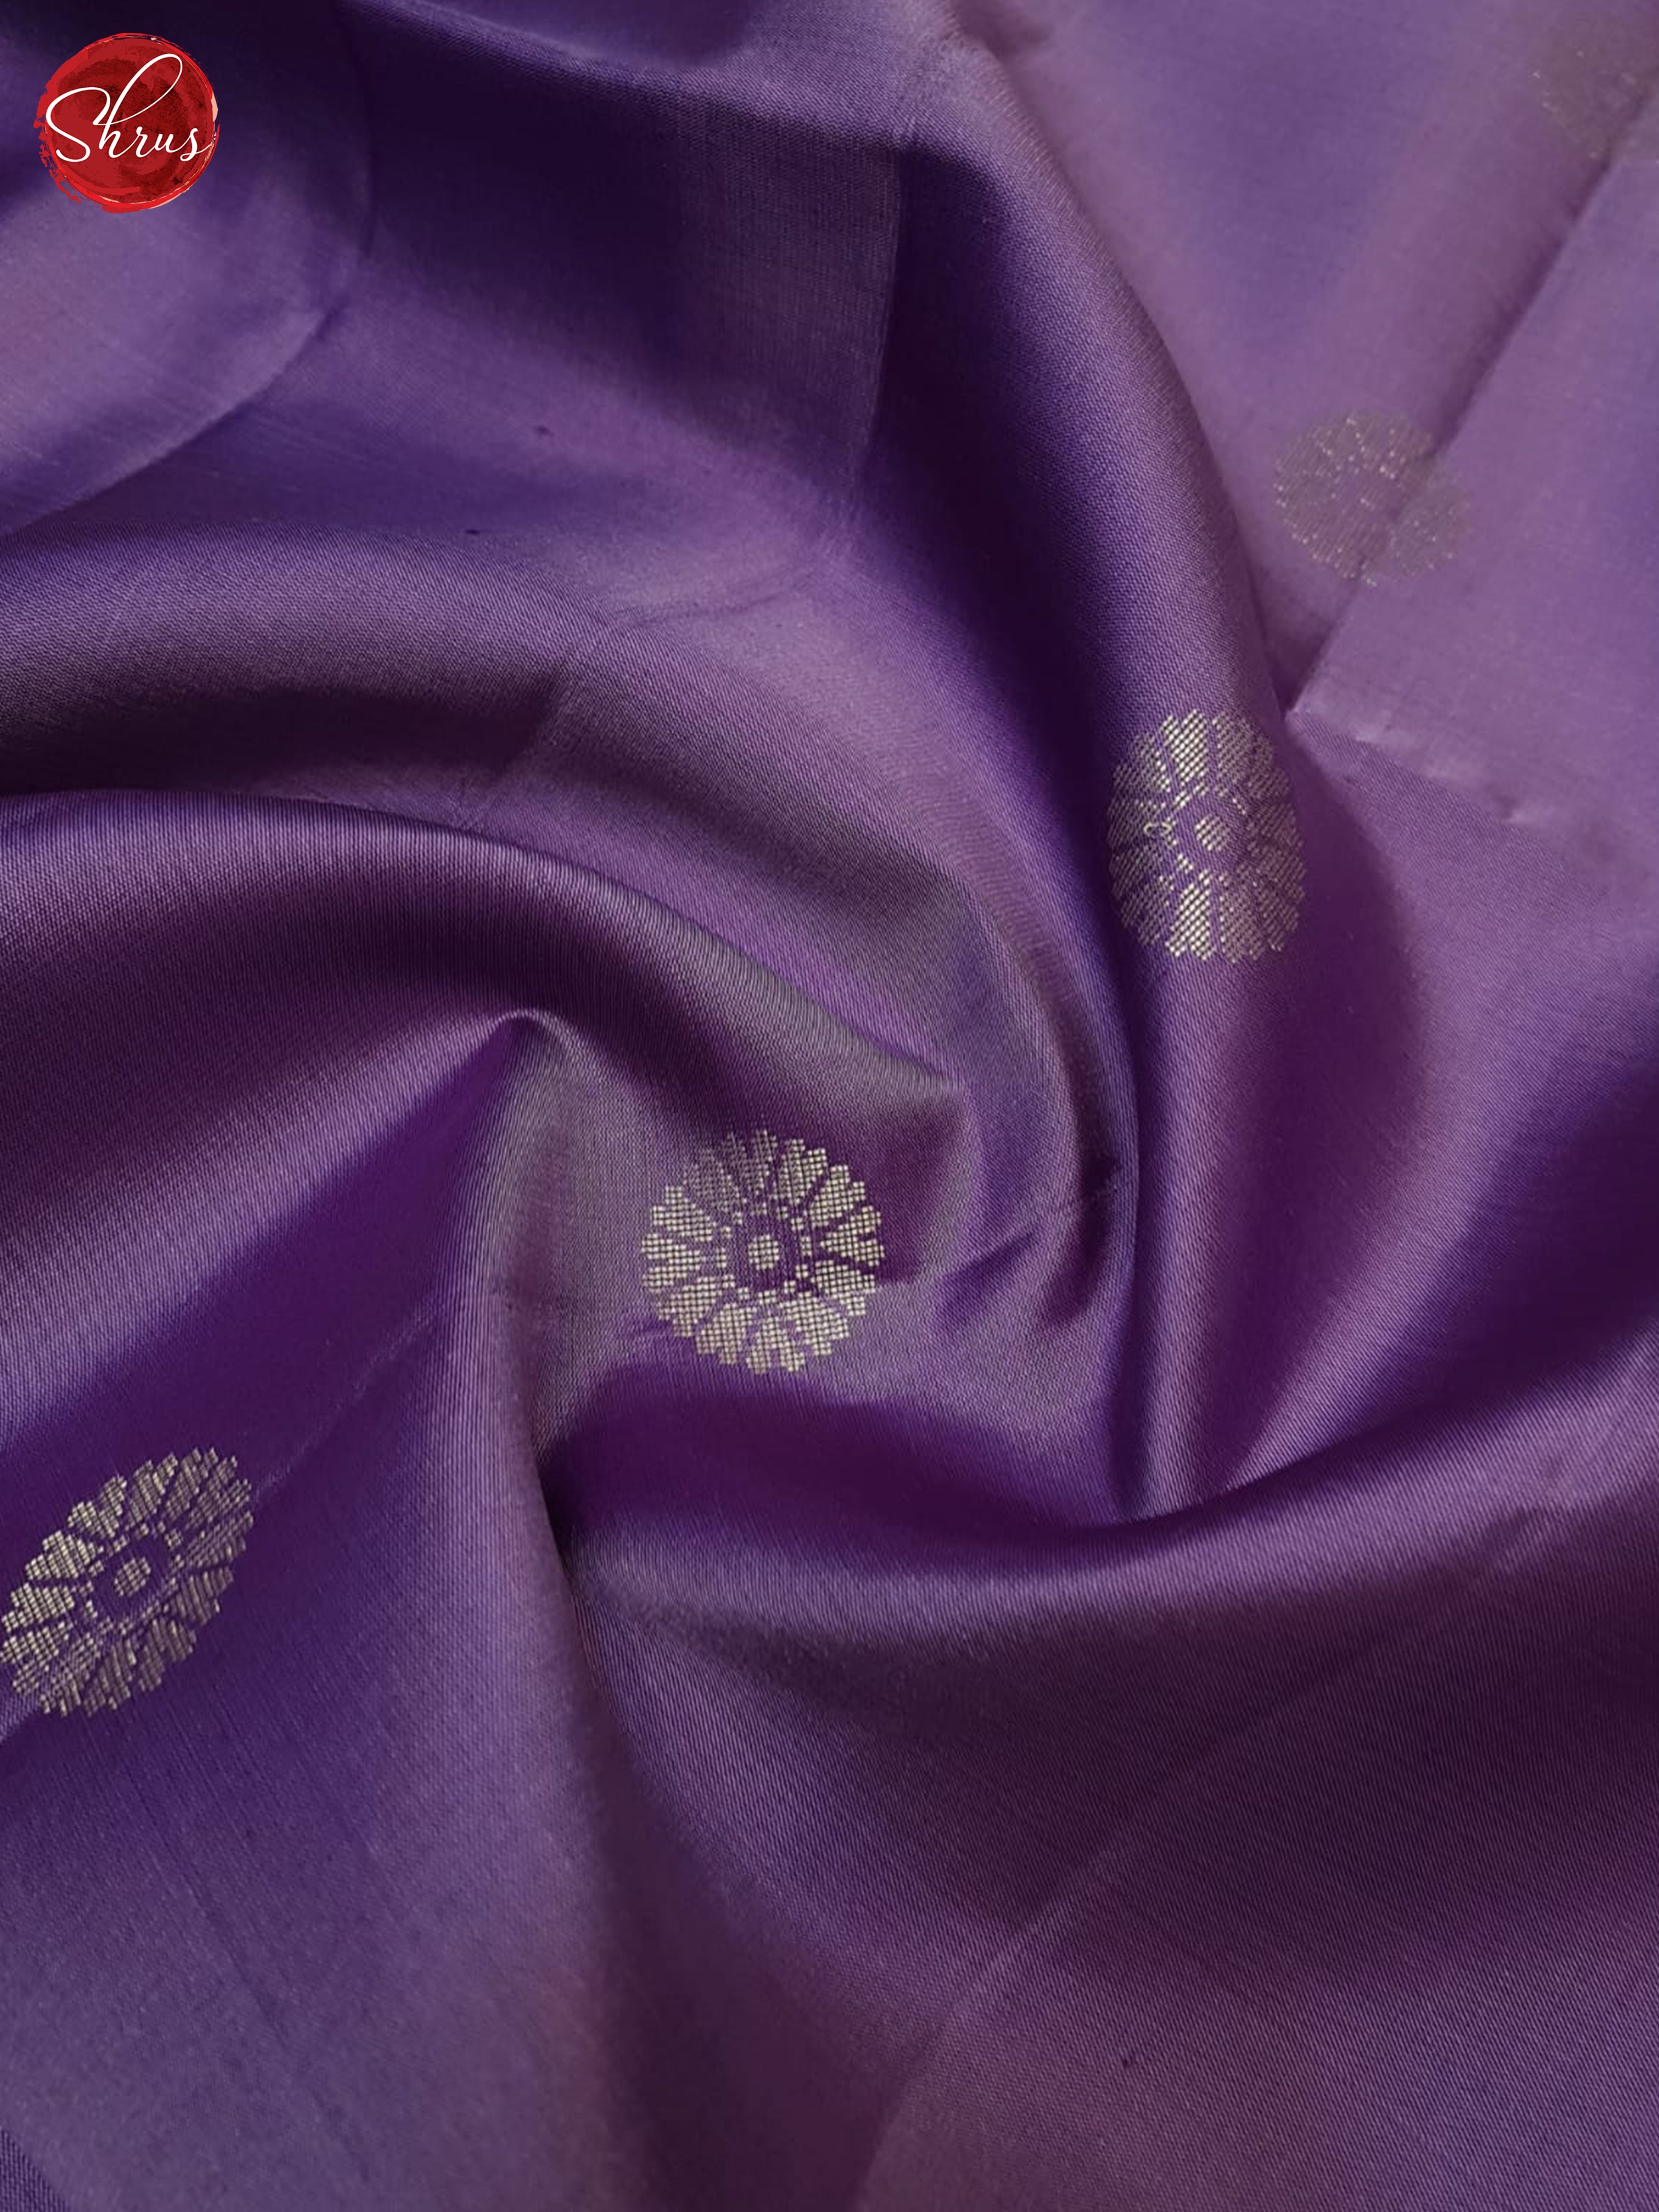 Lavender & Blue - Soft Silk Saree - Shop on ShrusEternity.com